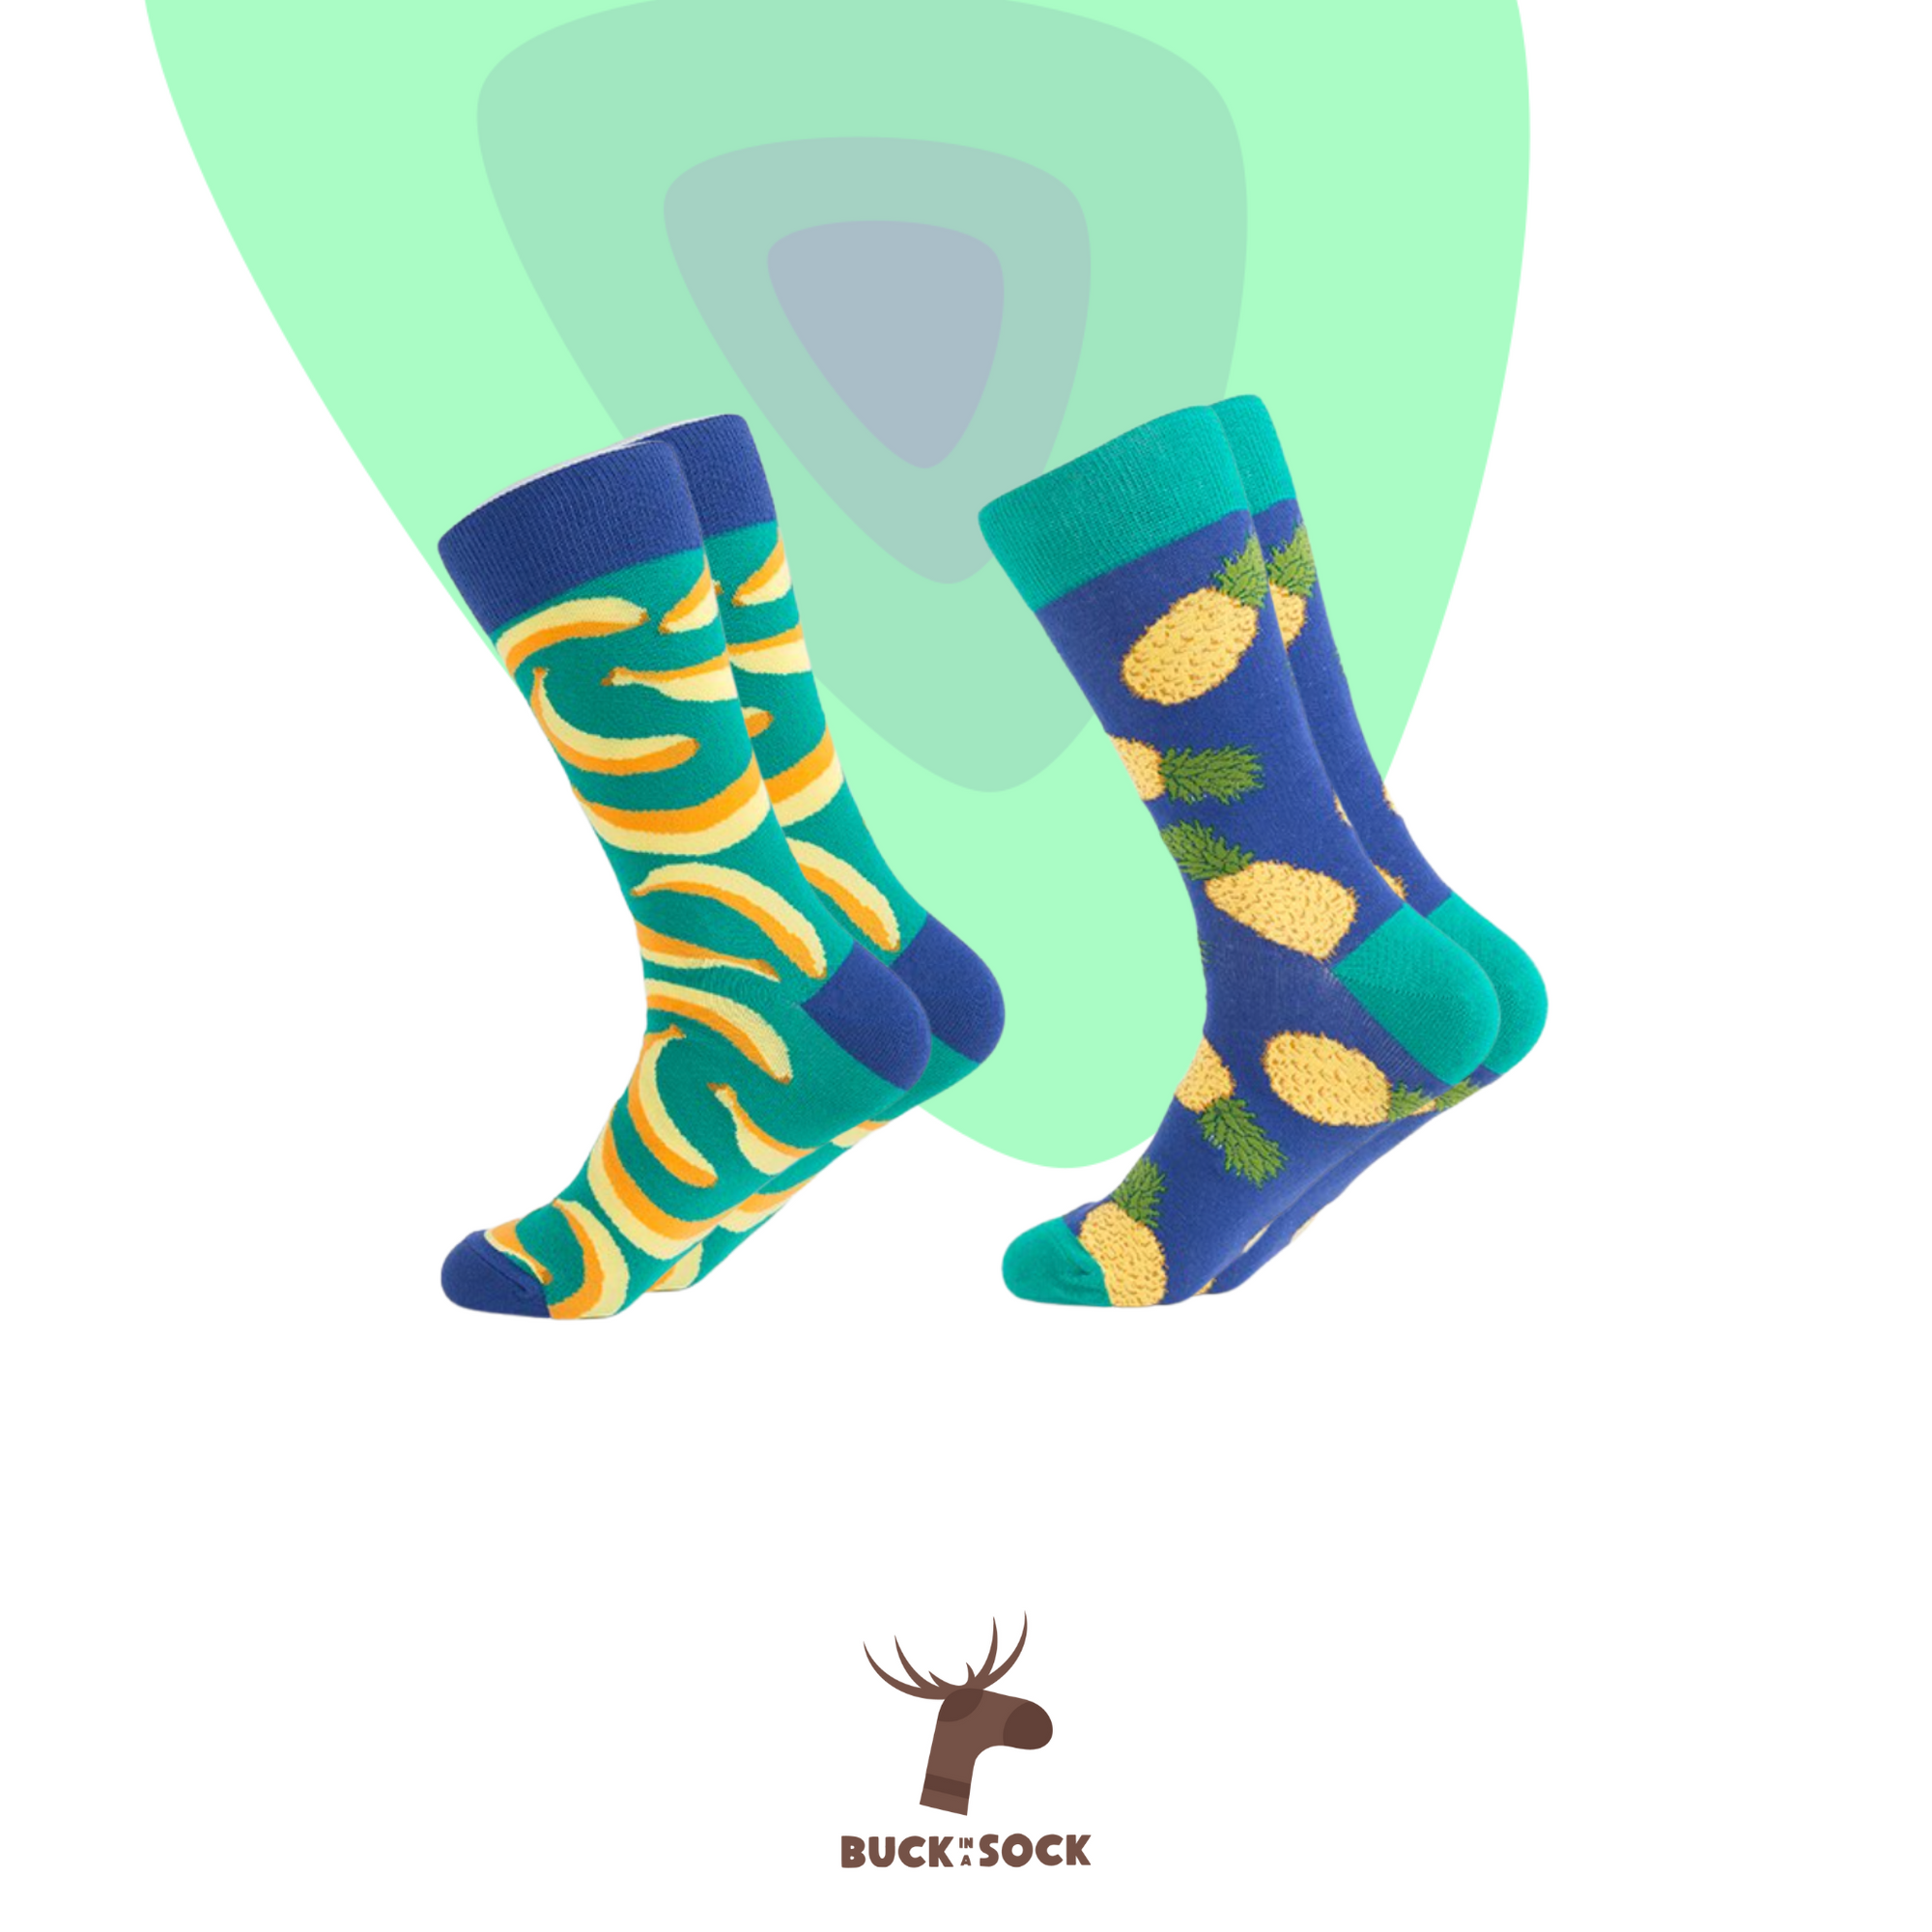 FRIUTS - Buck in a sock